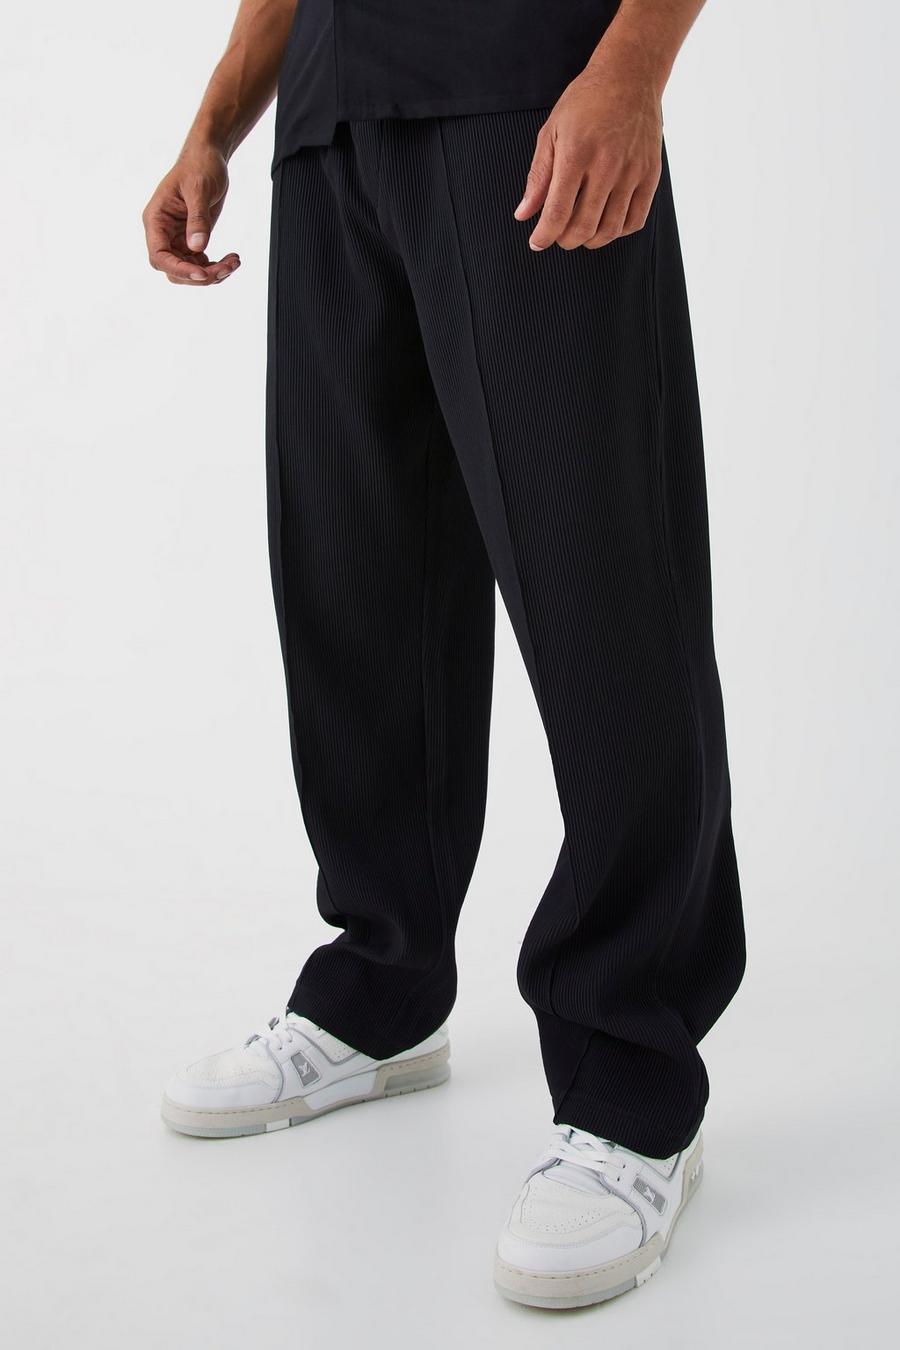 Pantalón holgado plisado con cintura elástica, Black negro image number 1